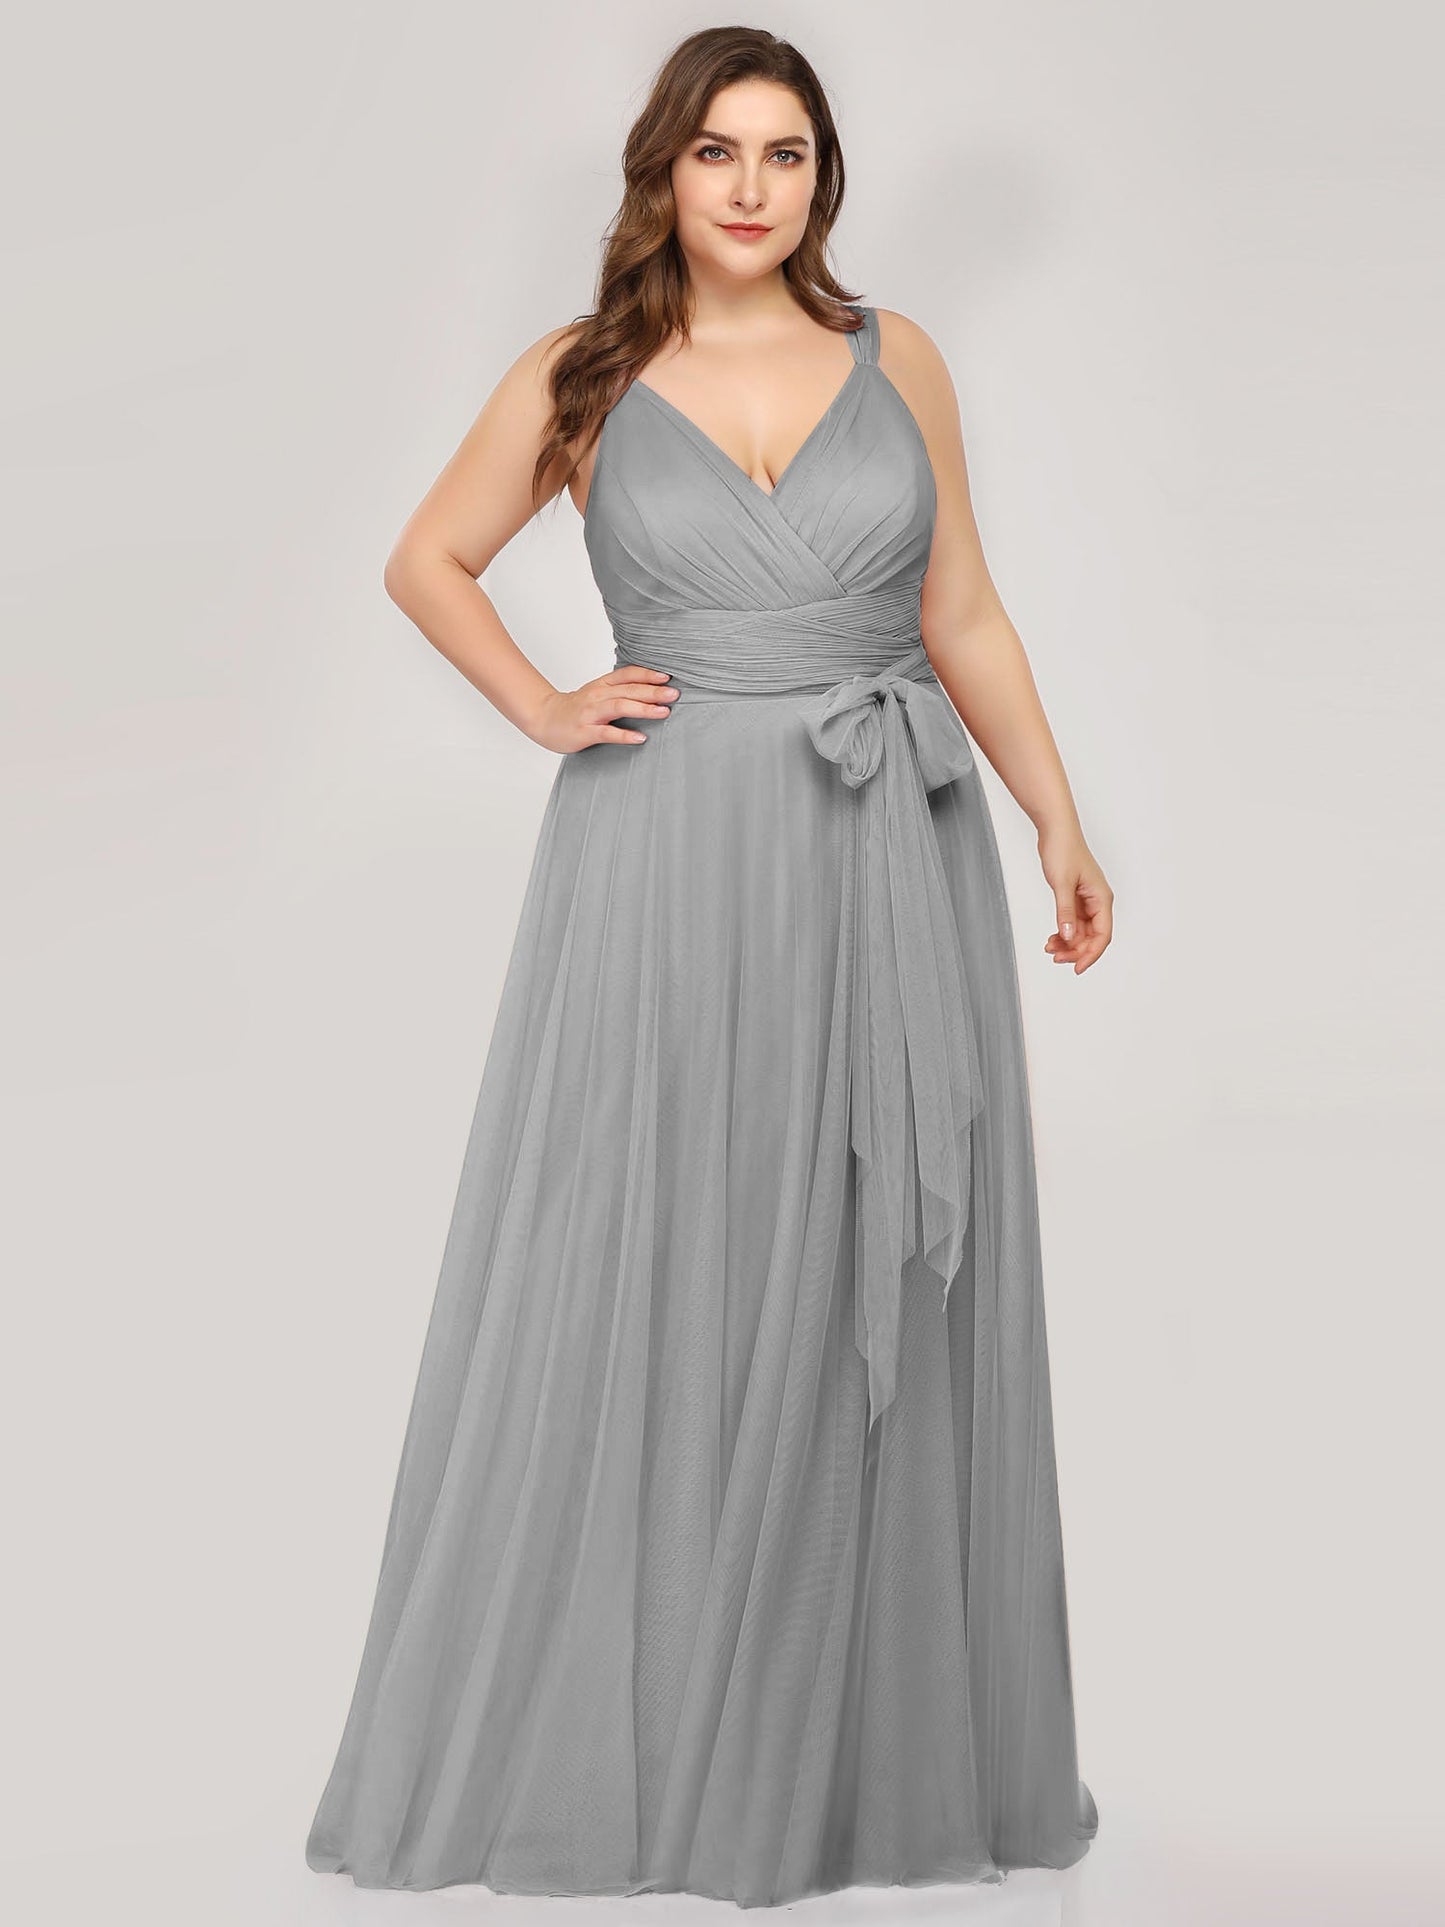 Plus Size Wholesale Tulle Bridesmaid Dresses for Women